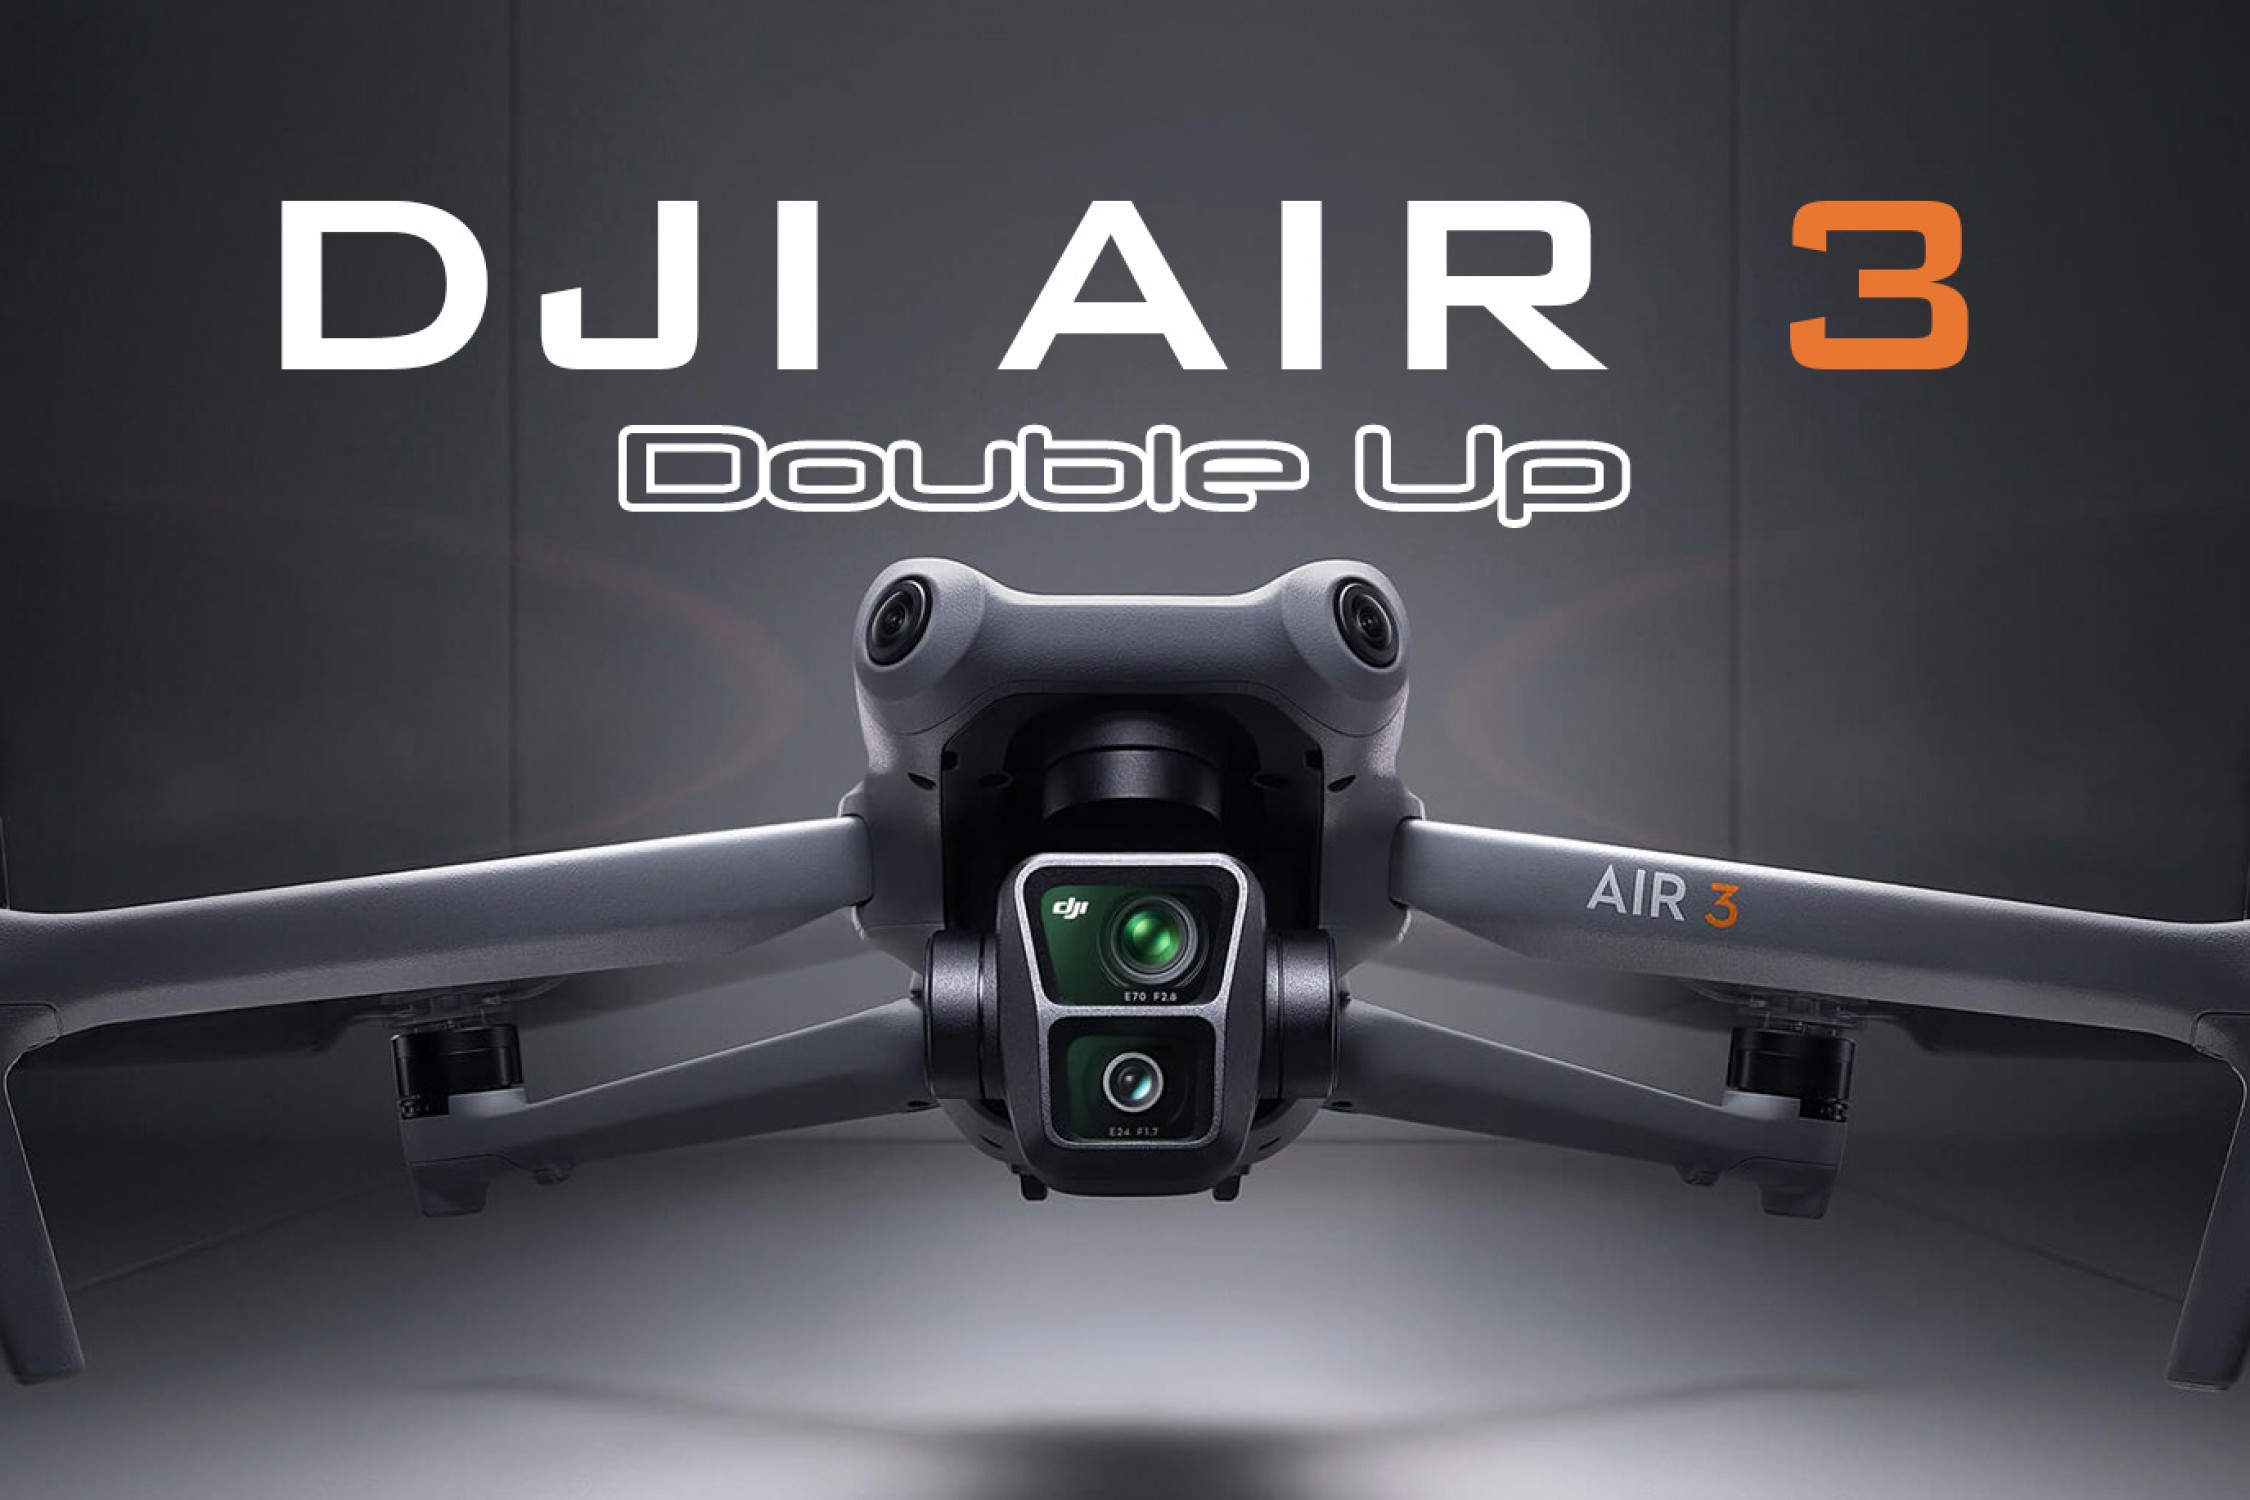 DJI AIR 3 drones